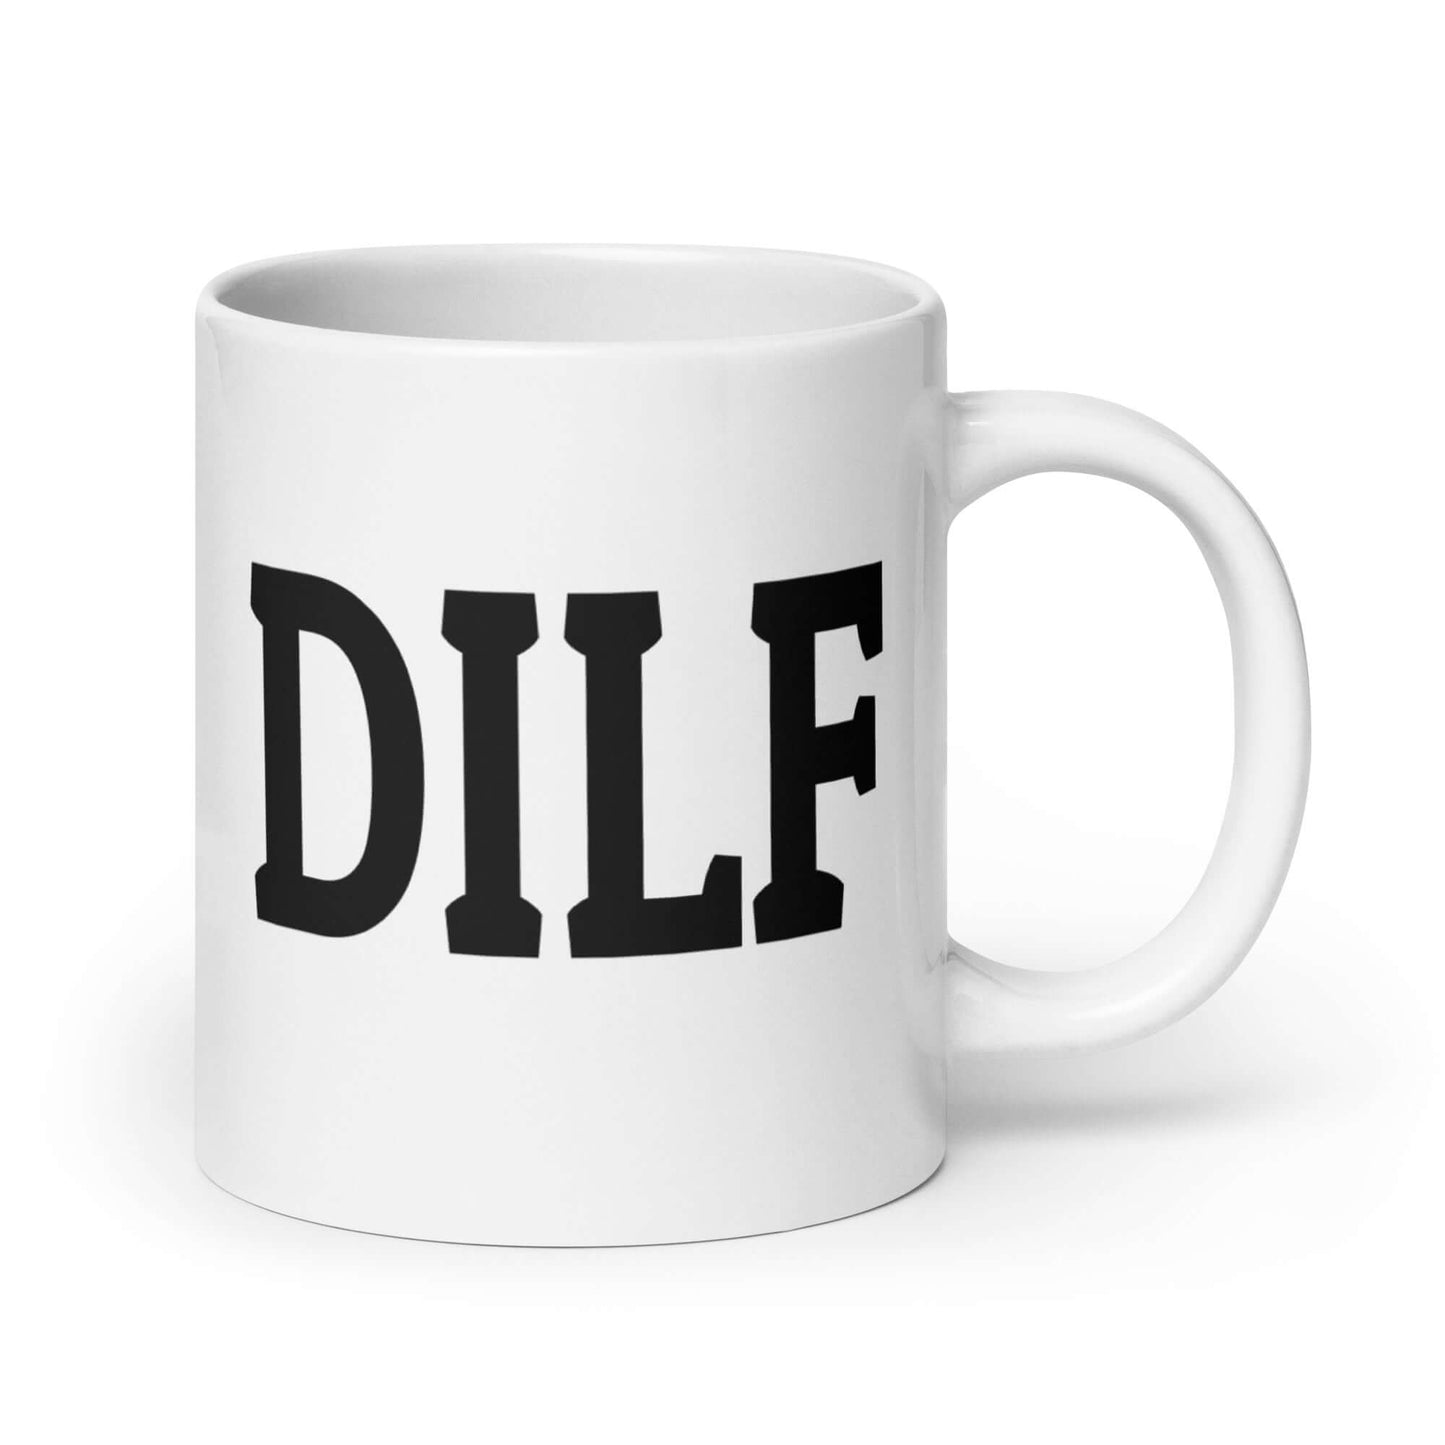 DILF Mug for Dad